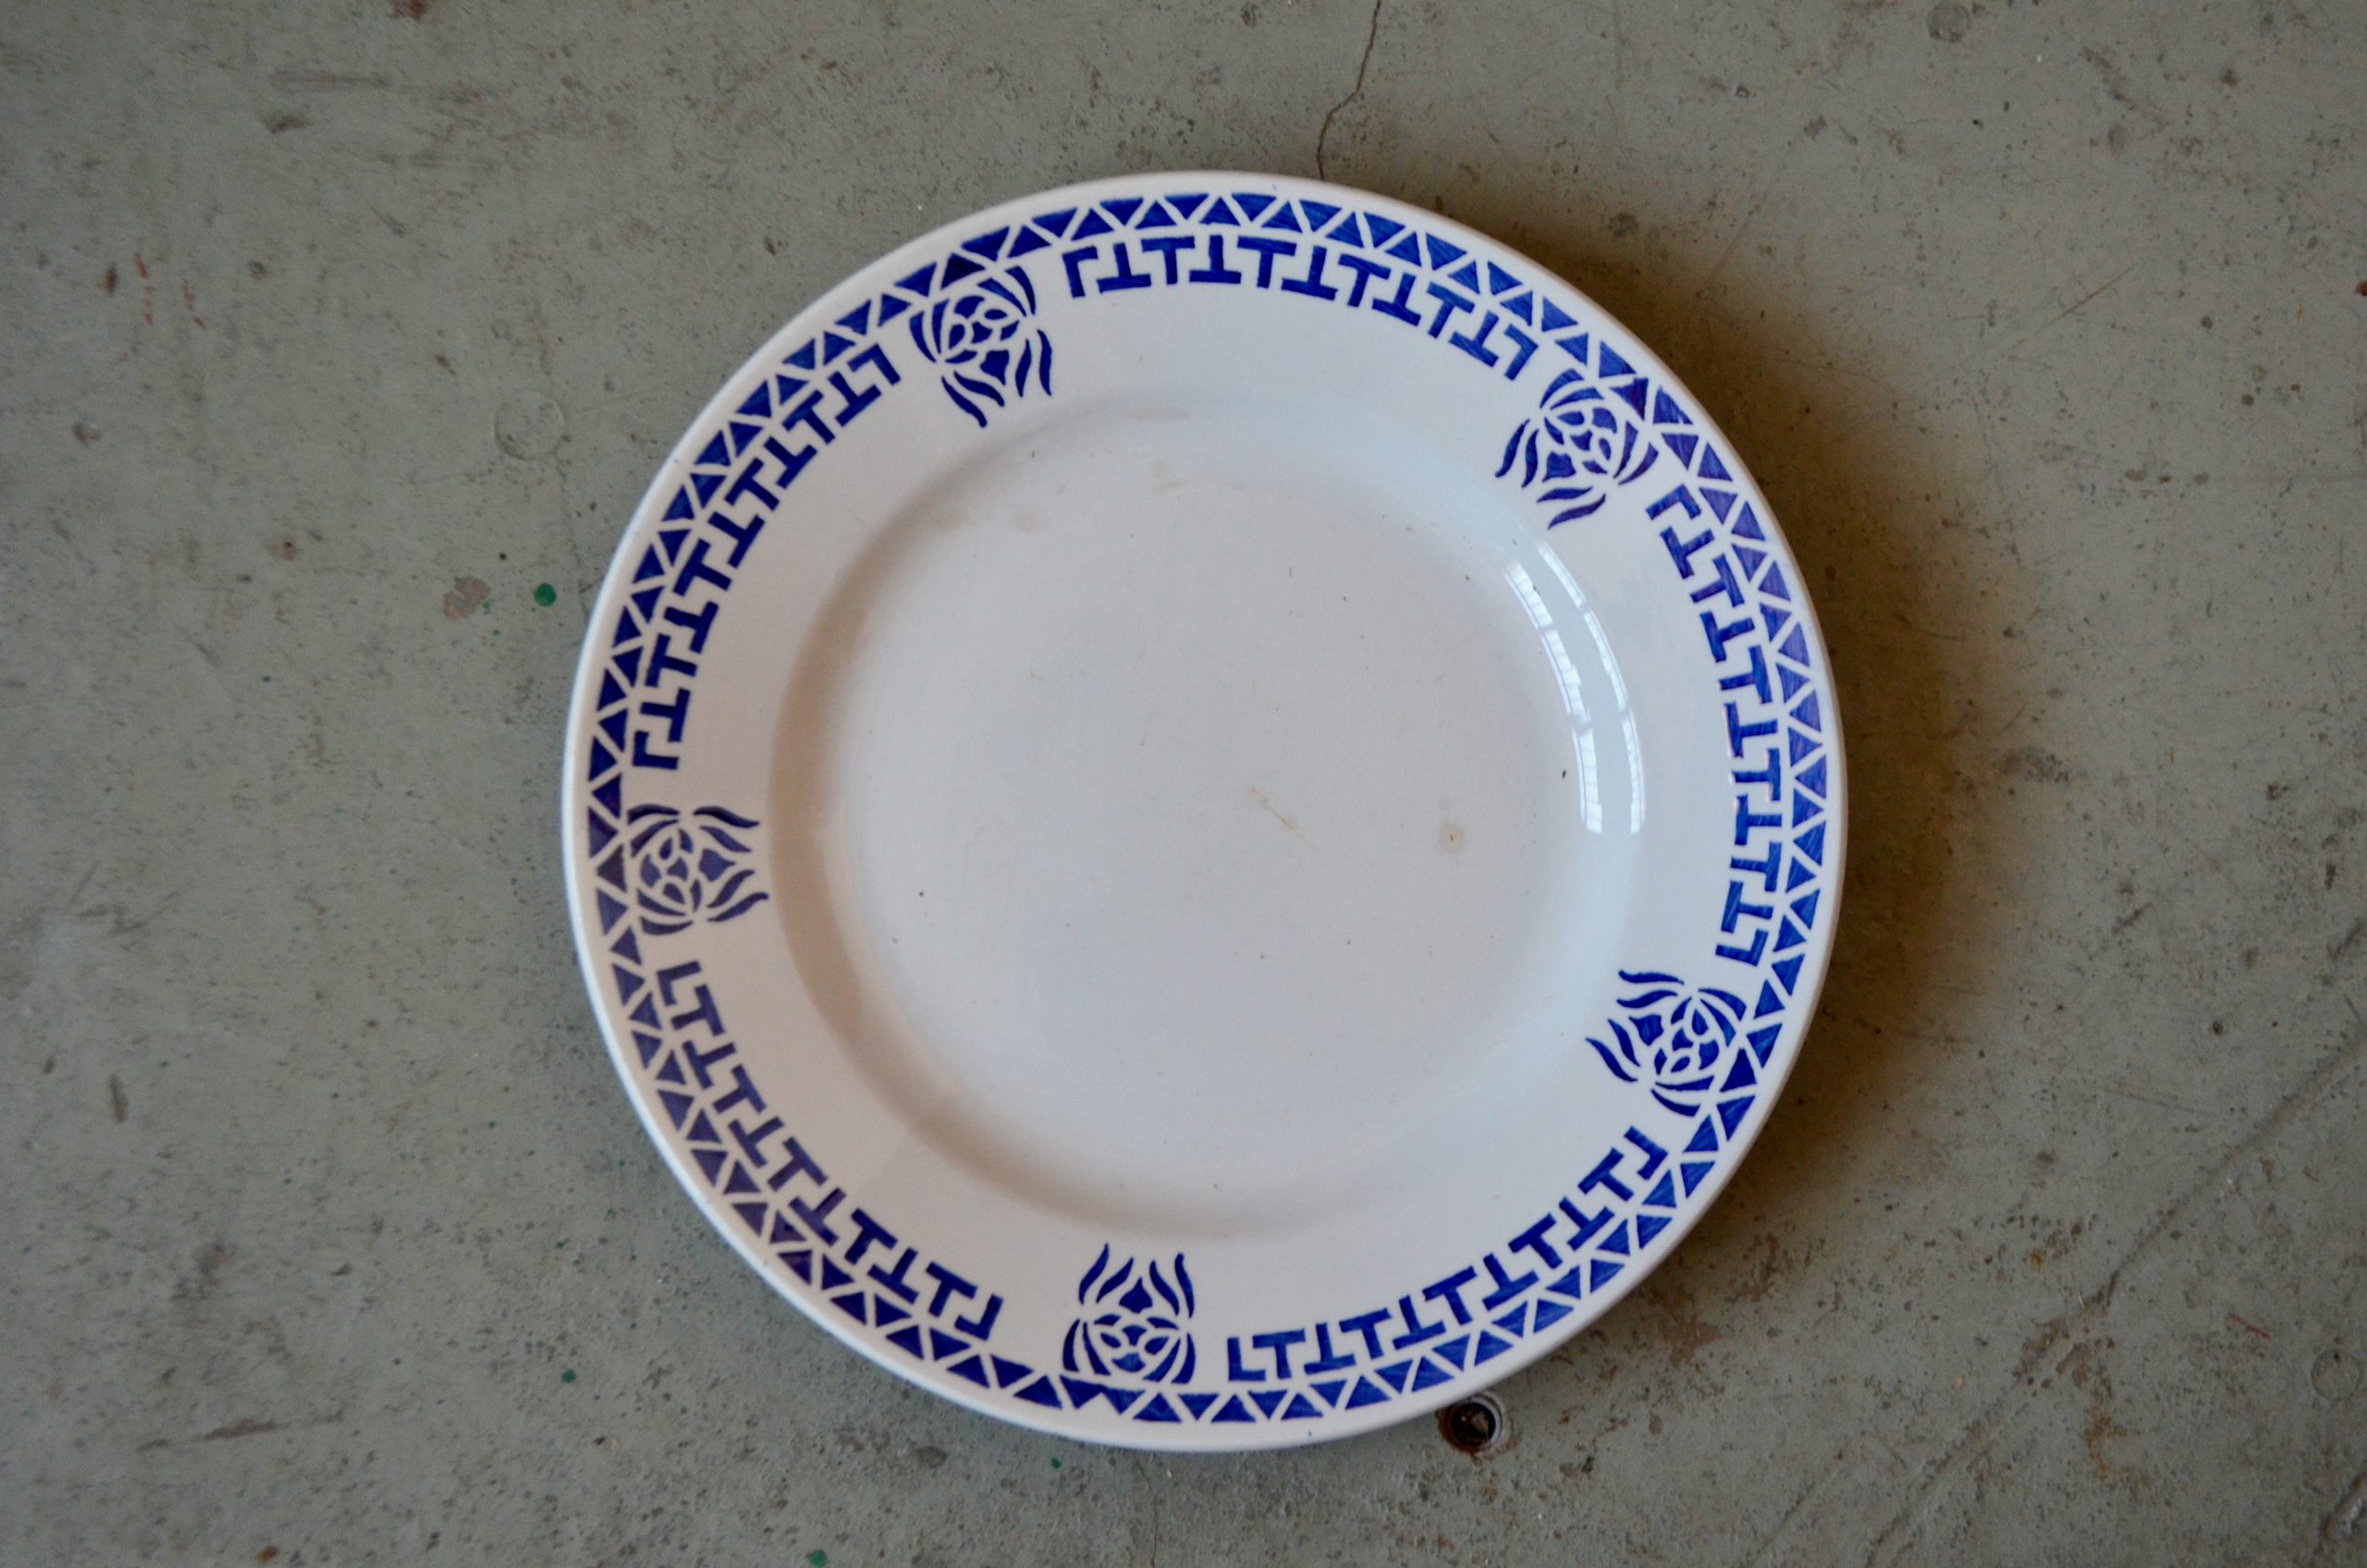 Voici une jolie série d'assiettes du service "Passy"  de la faïencerie de Longwy.  Elles datent de la première moitié du 20ème siècle et sont délicieusement bohèmes. De jolis motifs géométriques bleus roi viennent décorer les assiettes.